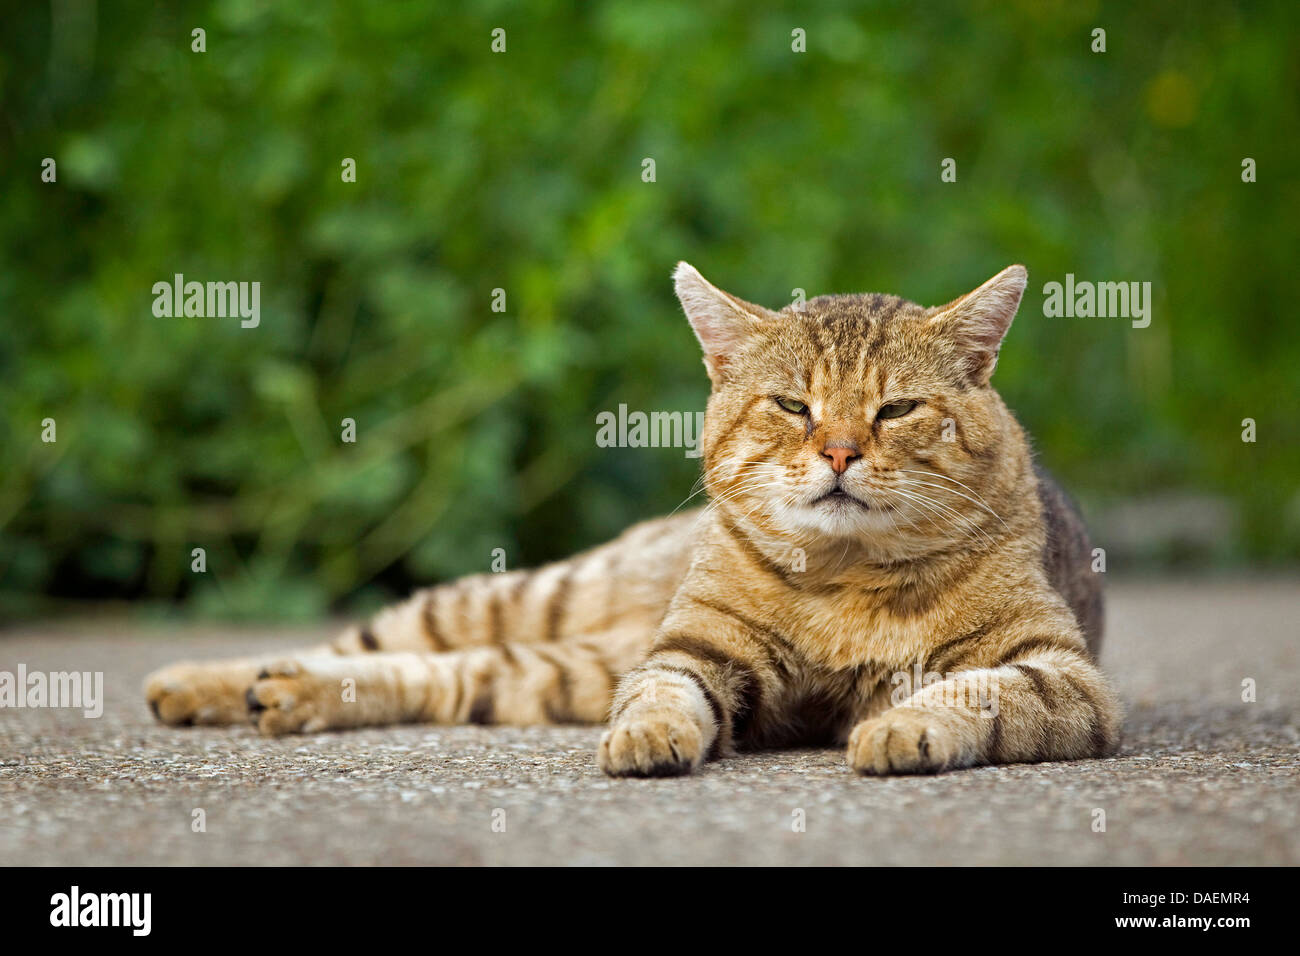 Chat domestique, le chat domestique (Felis silvestris catus), f. brun vieux mensonge tomcat sur une façon de dormir, Allemagne Banque D'Images